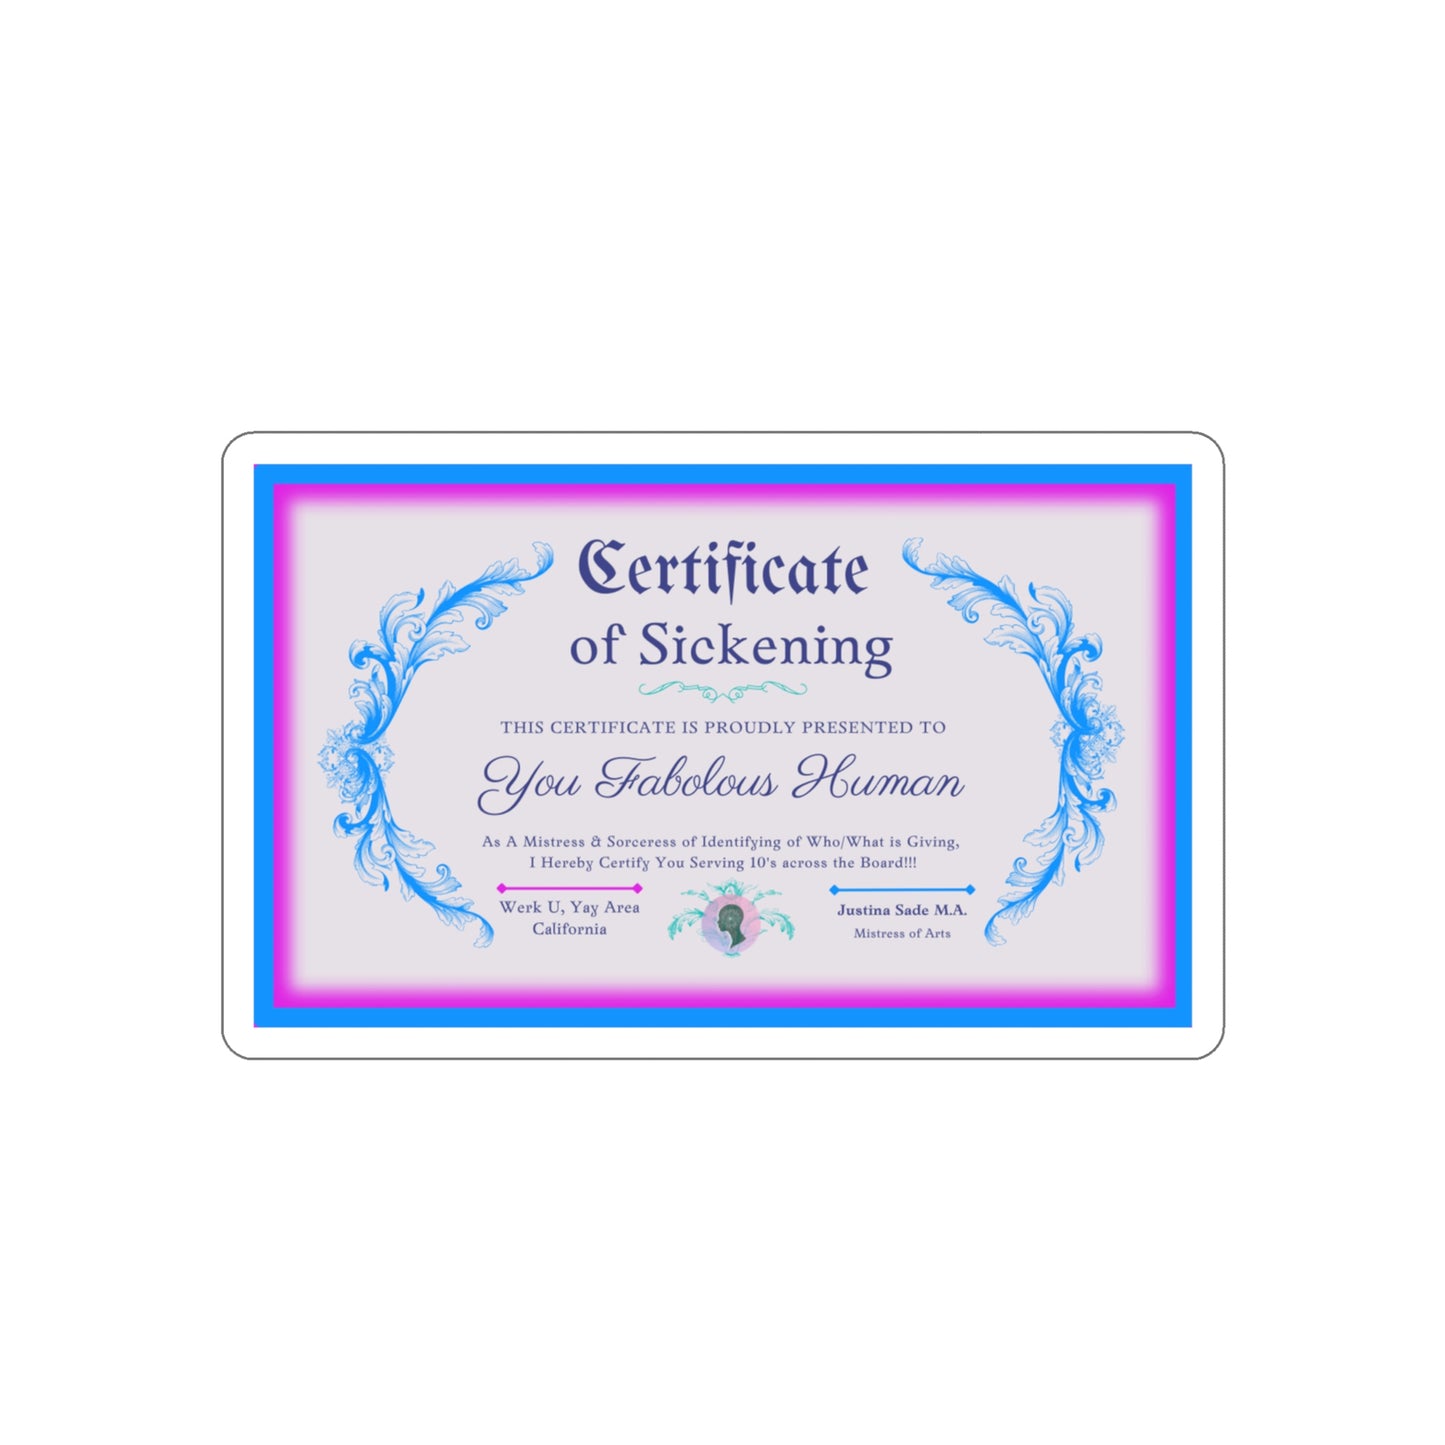 Certificate of Sickening - Die-Cut Stickers